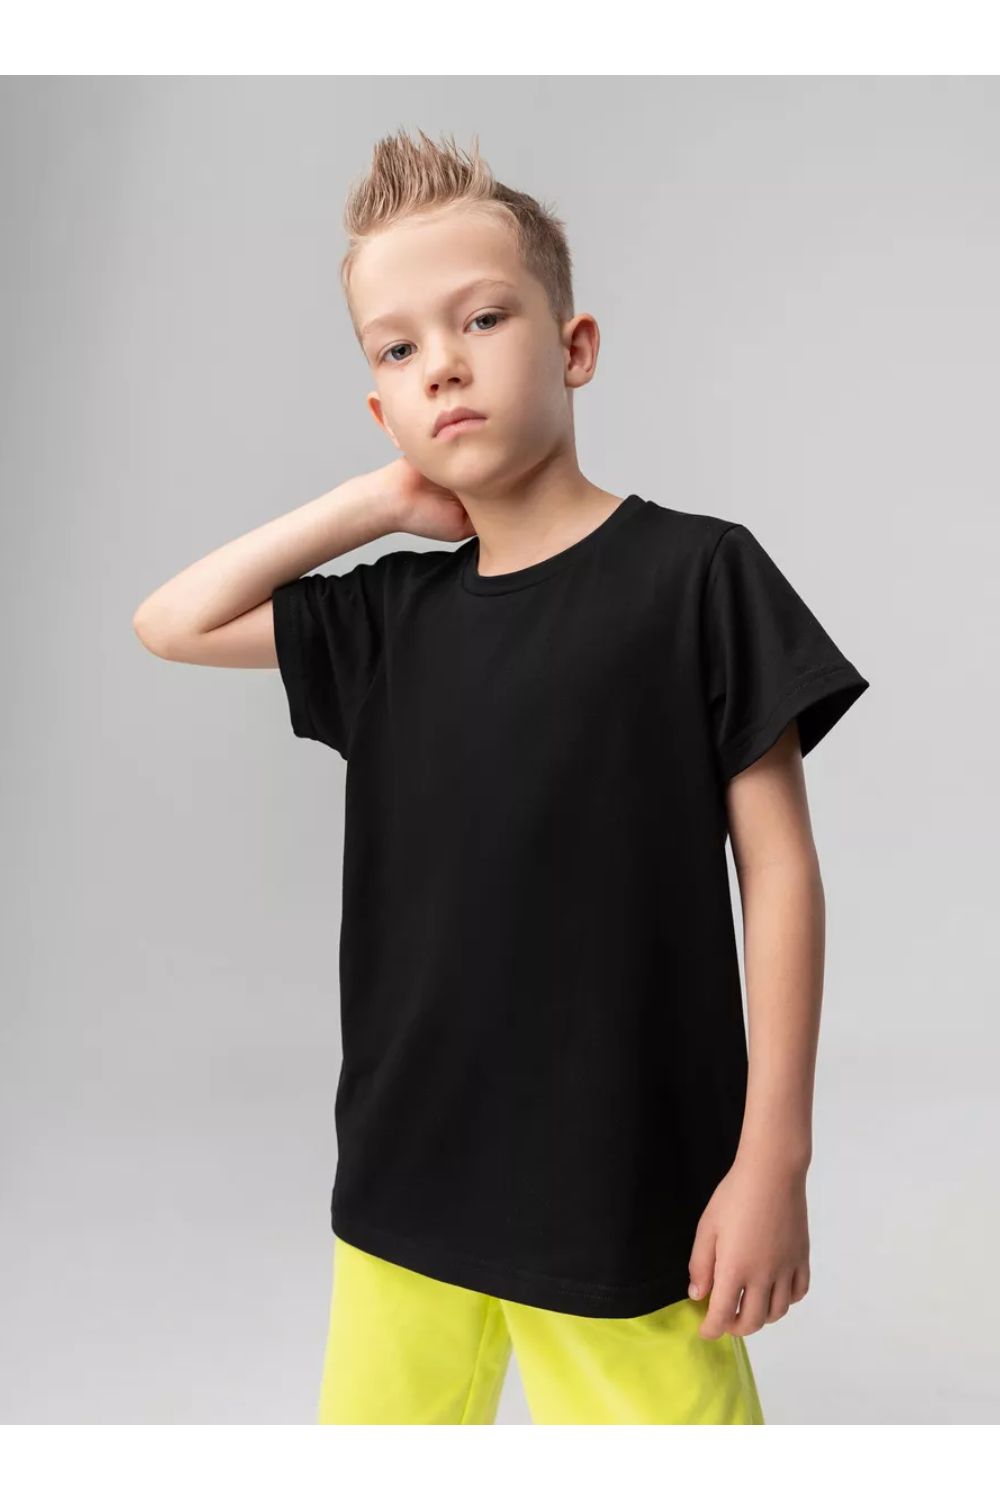 7453 футболка детская однотонная - черный